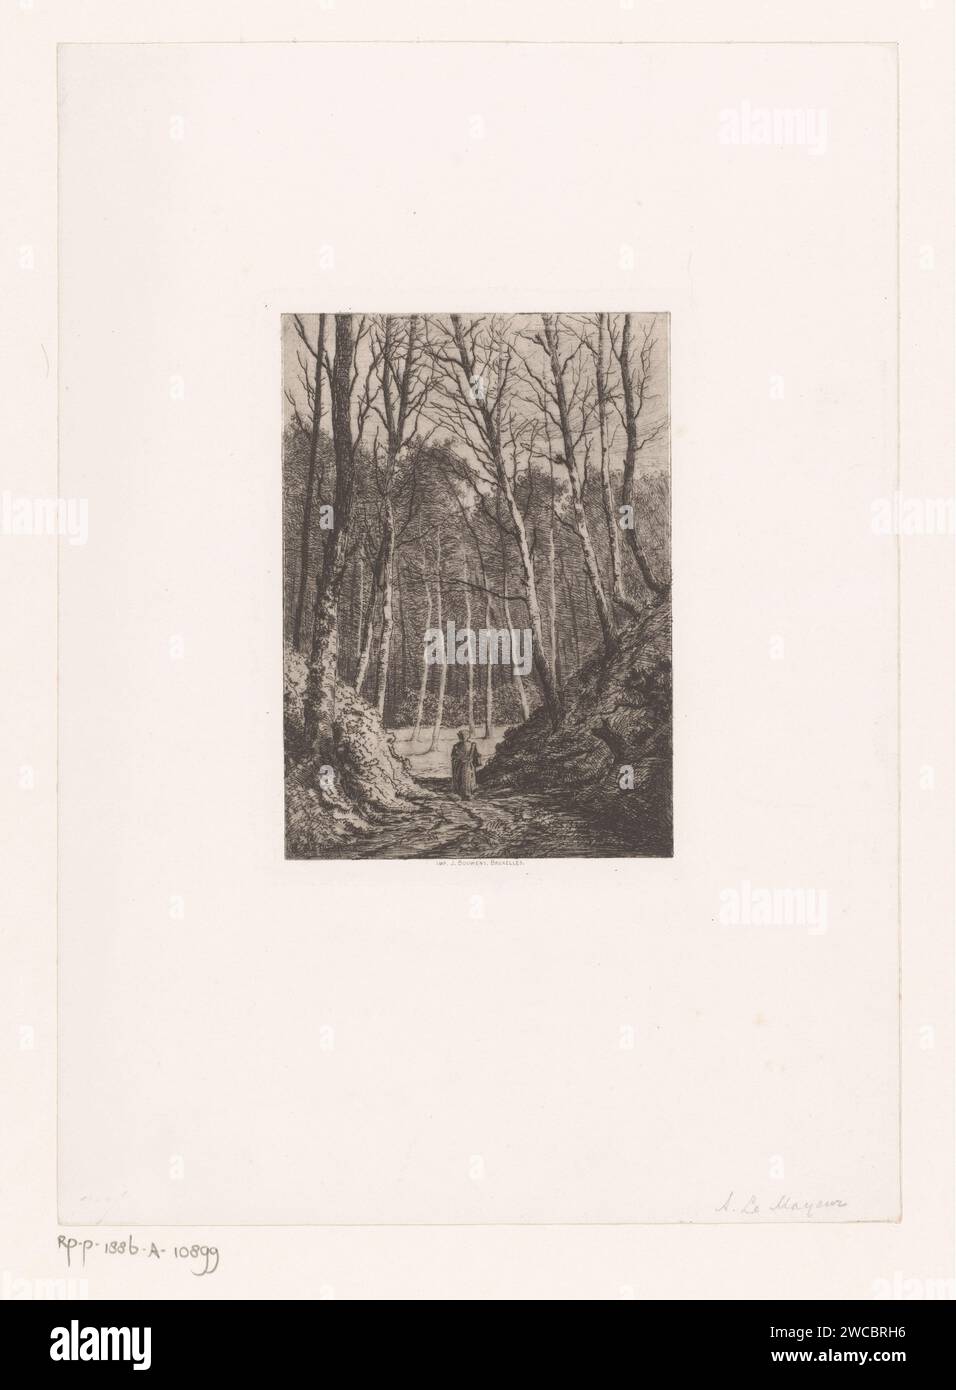 Donna cammina su un sentiero nella foresta di Sonian, Adrien le Mayeur de Merprés, 1854 - 1886 stampa carta di Bruxelles. Percorso forestale o corsia delle Fiandre. Bruxelles (regione) Foto Stock